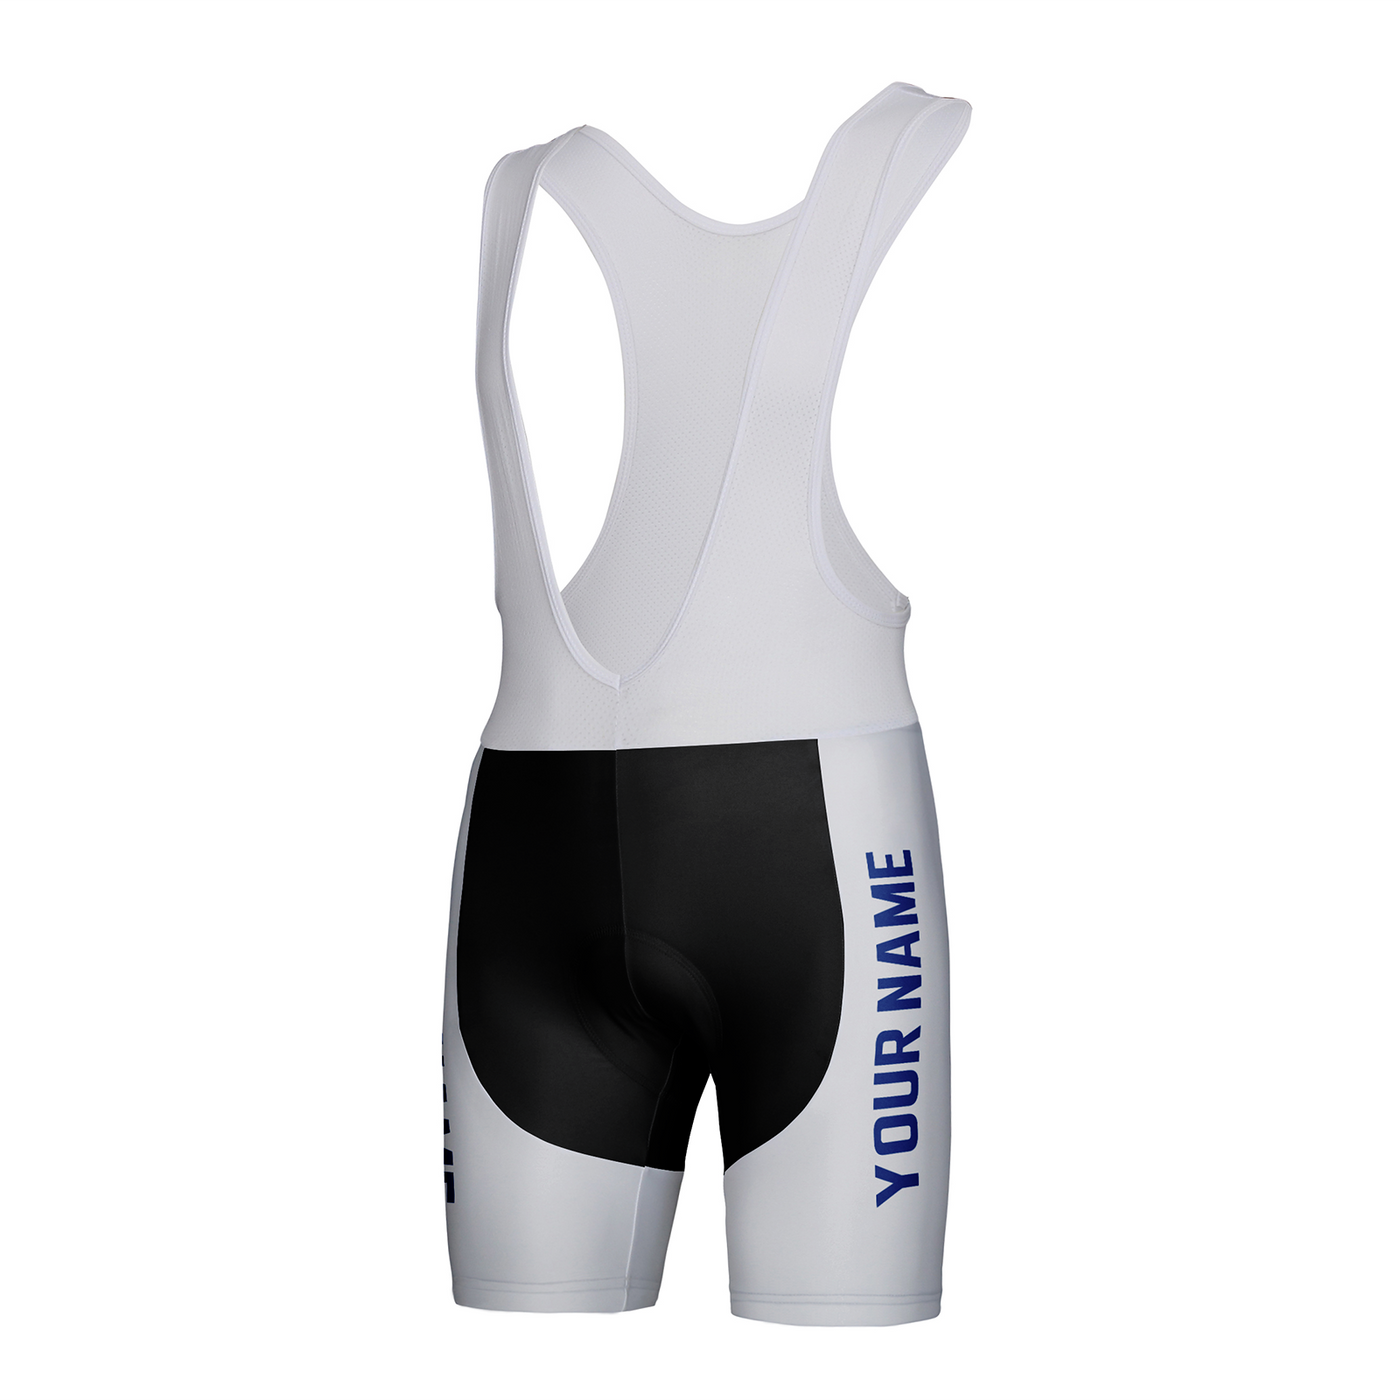 Customized Indianapolis Team Unisex Cycling Bib Shorts